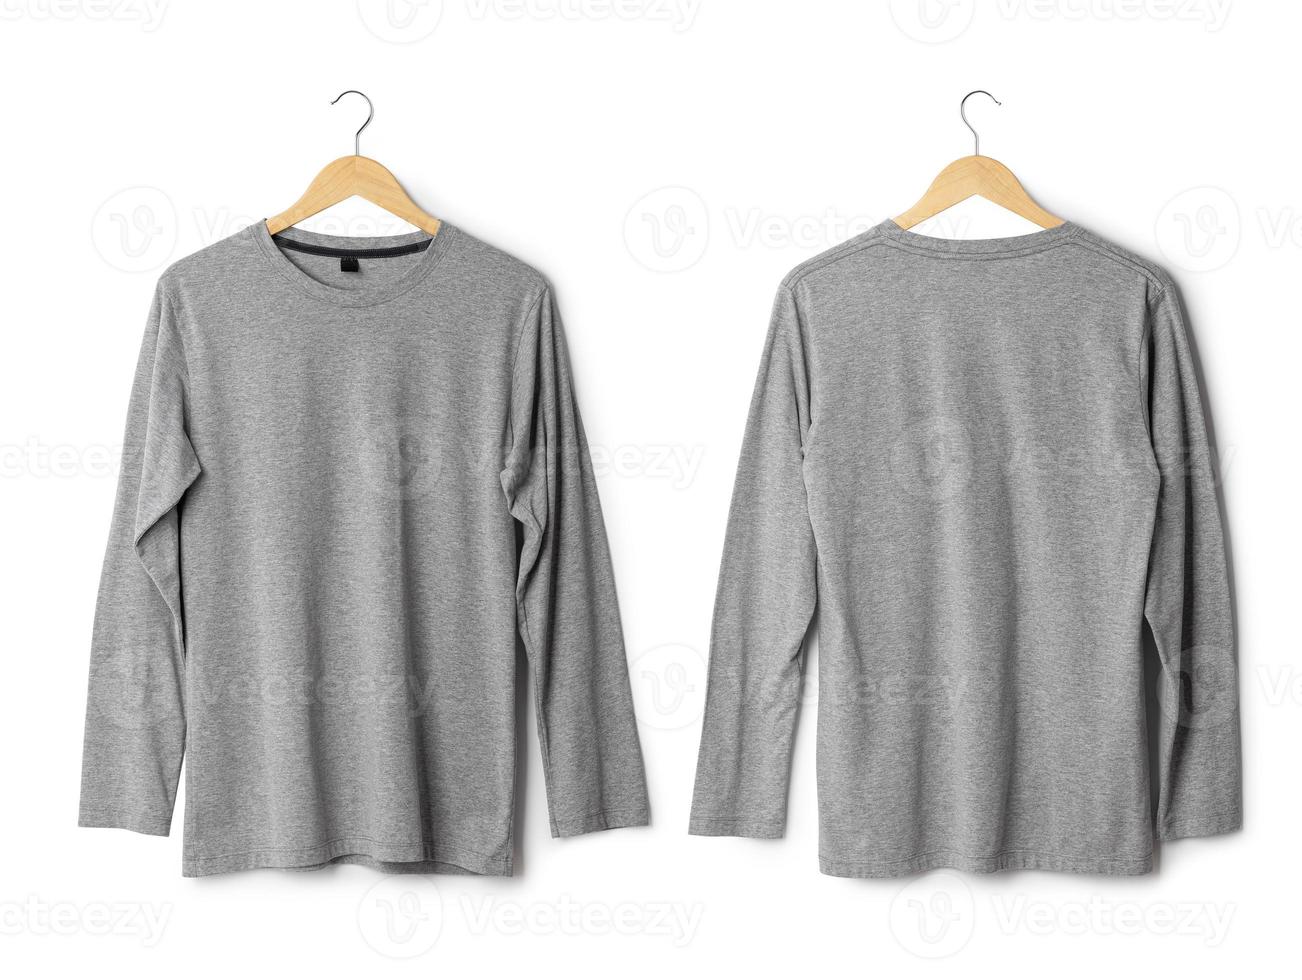 maquete realista de camiseta de manga longa pendurada na frente e vista traseira isolada no fundo branco com traçado de recorte foto